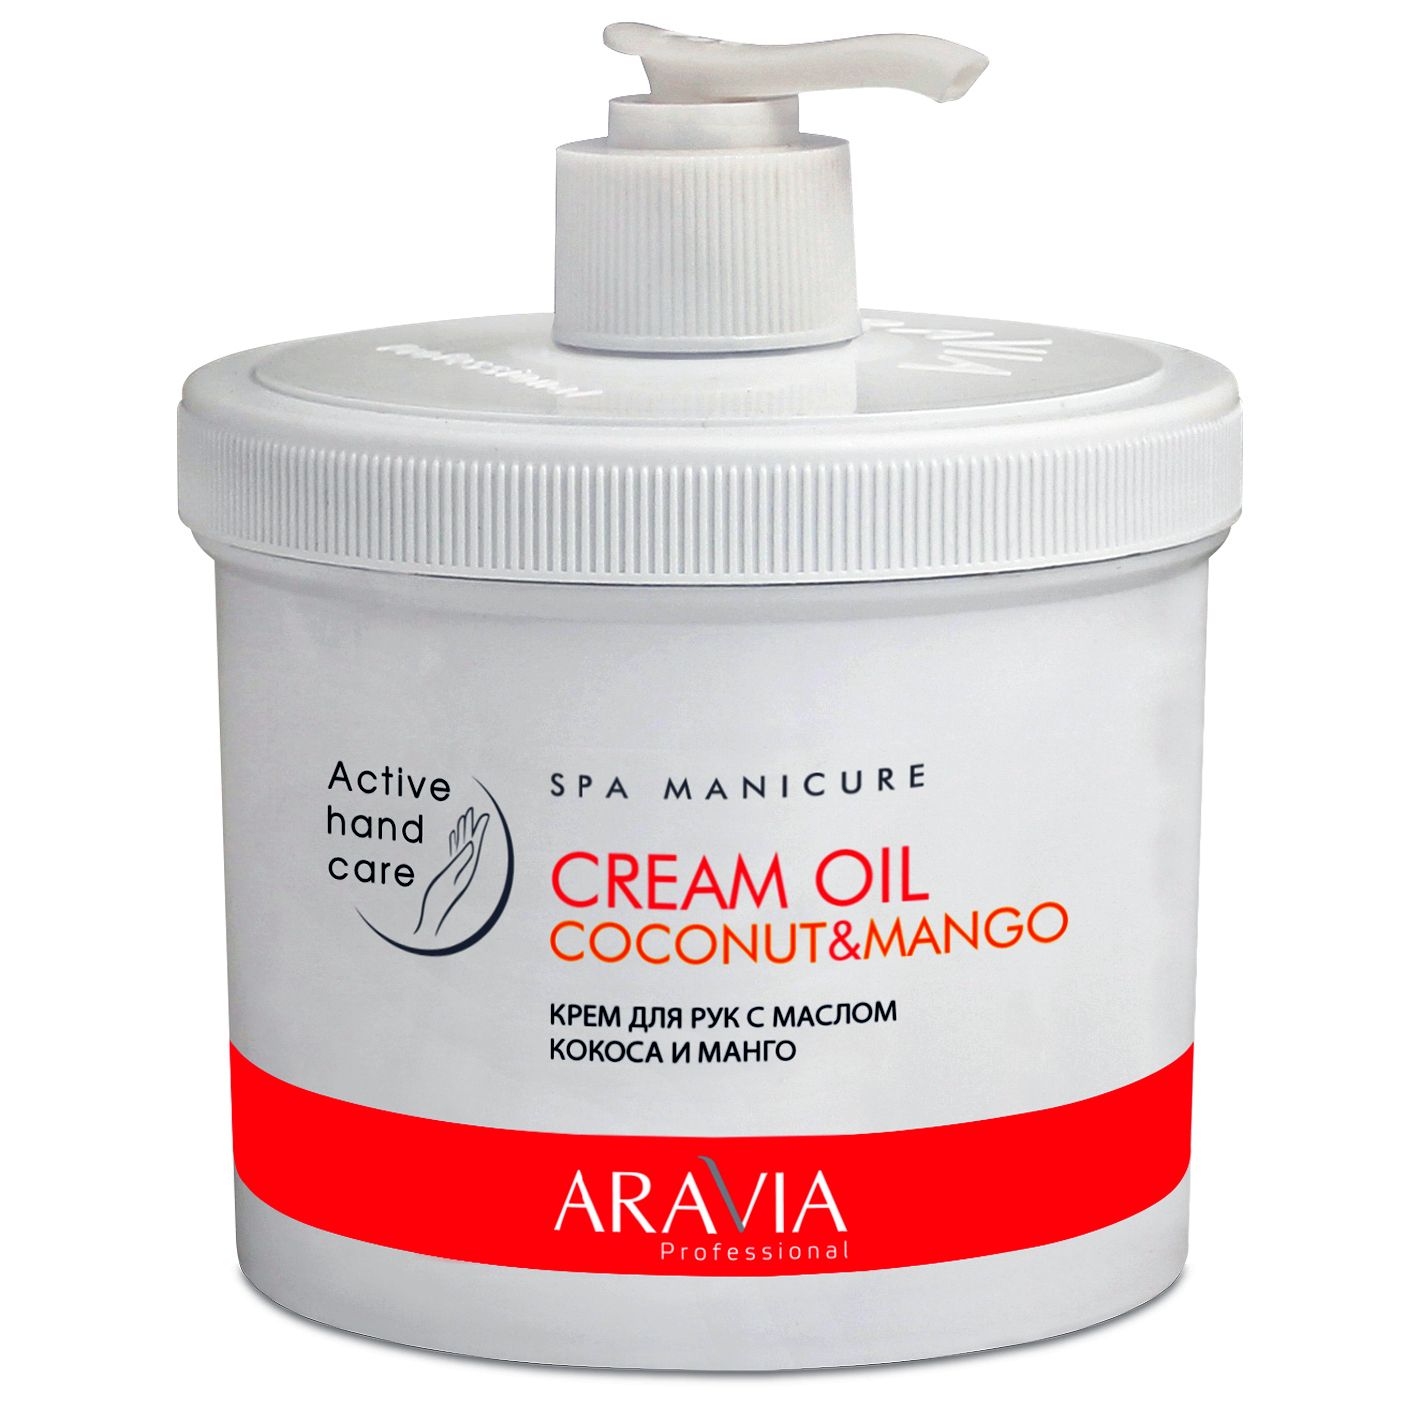 Aravia крем для рук с маслом кокоса и манго cream oil 550мл (р)